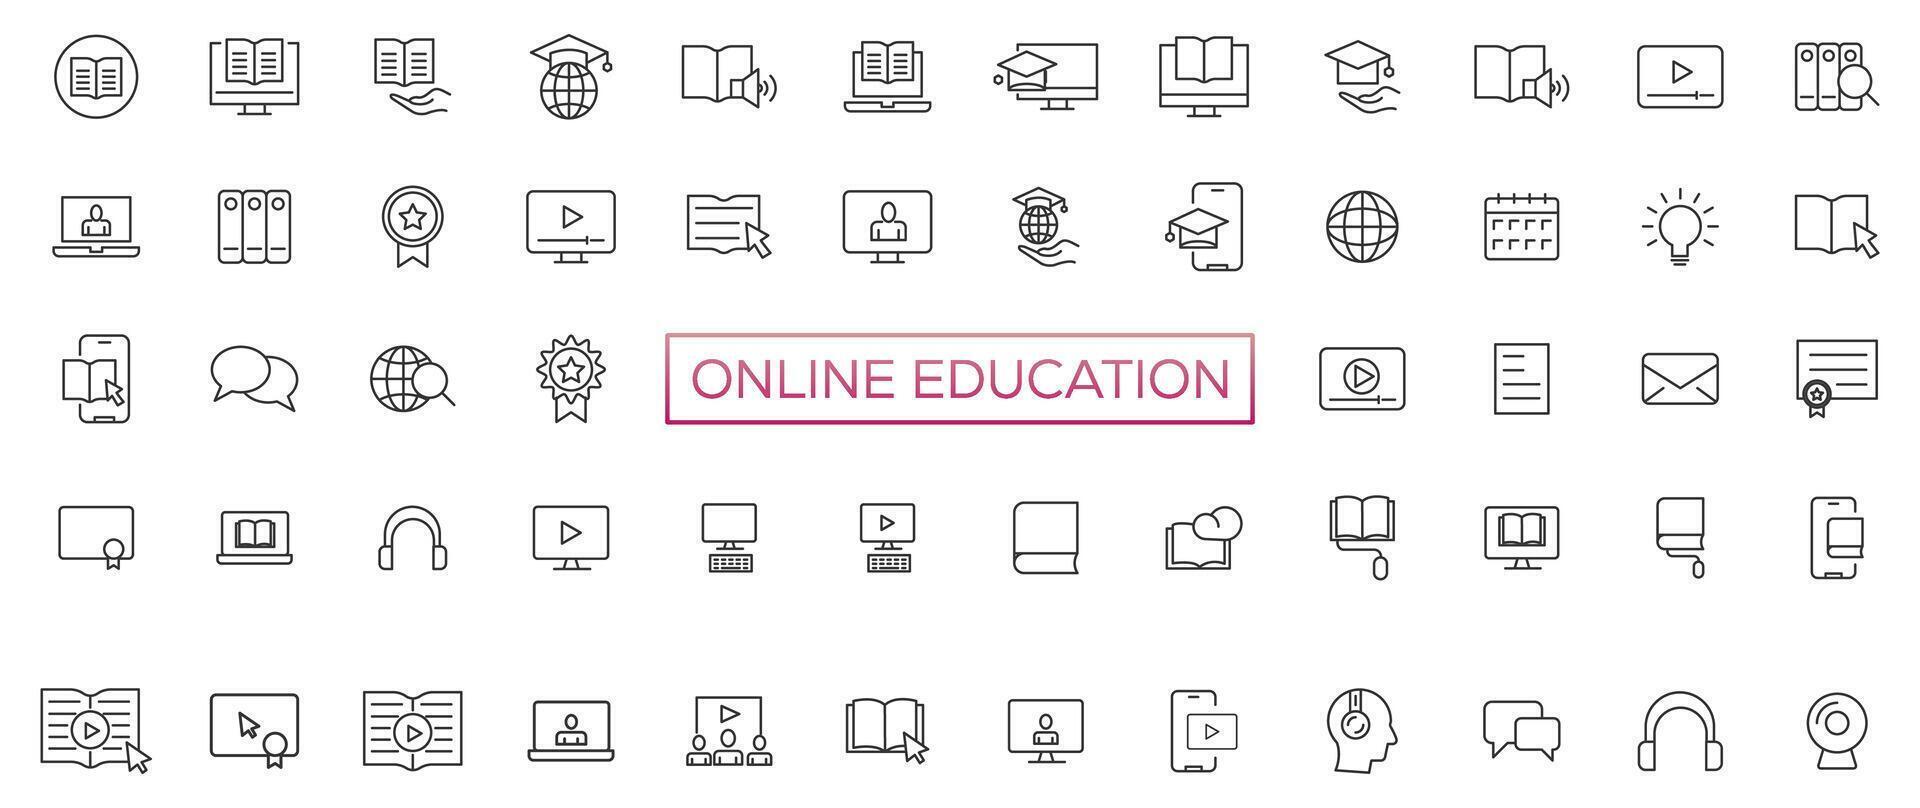 aprendizaje electrónico, en línea educación íconos colocar. 60 60 electrónico aprendizaje iconos distancia aprendizaje colección contorno íconos colección vector